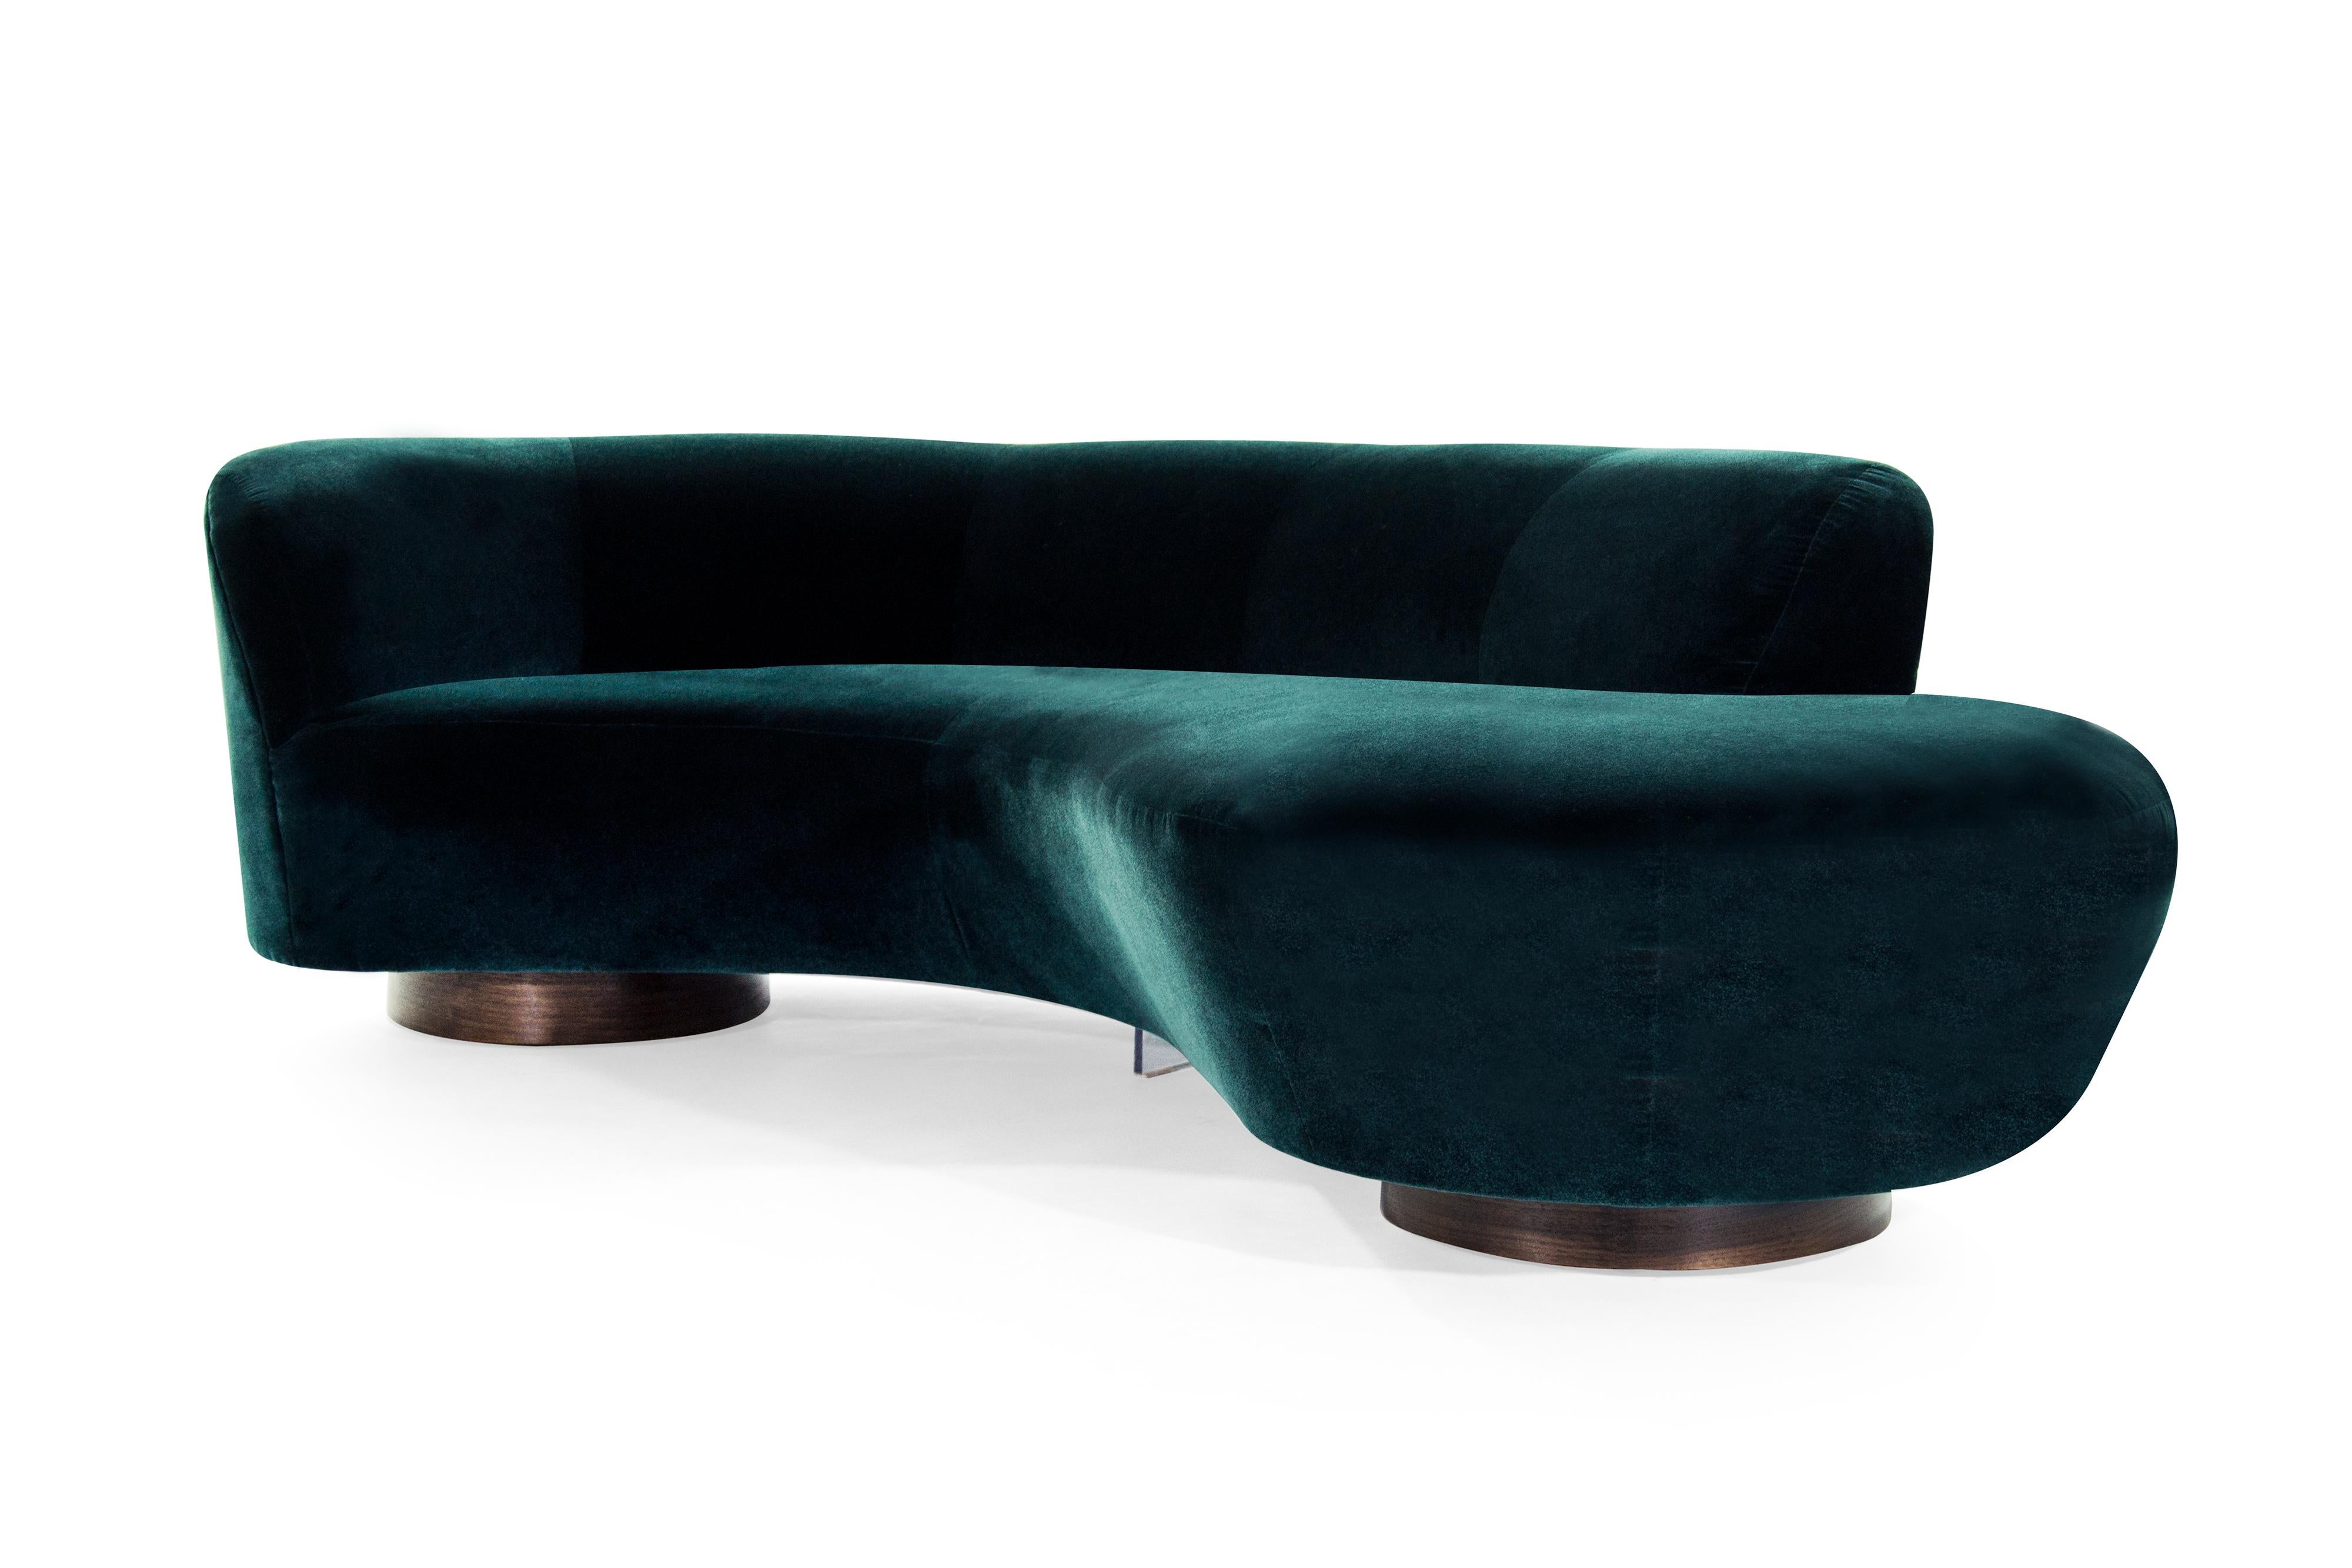 American Curved Sofa in Teal Velvet by Vladimir Kagan